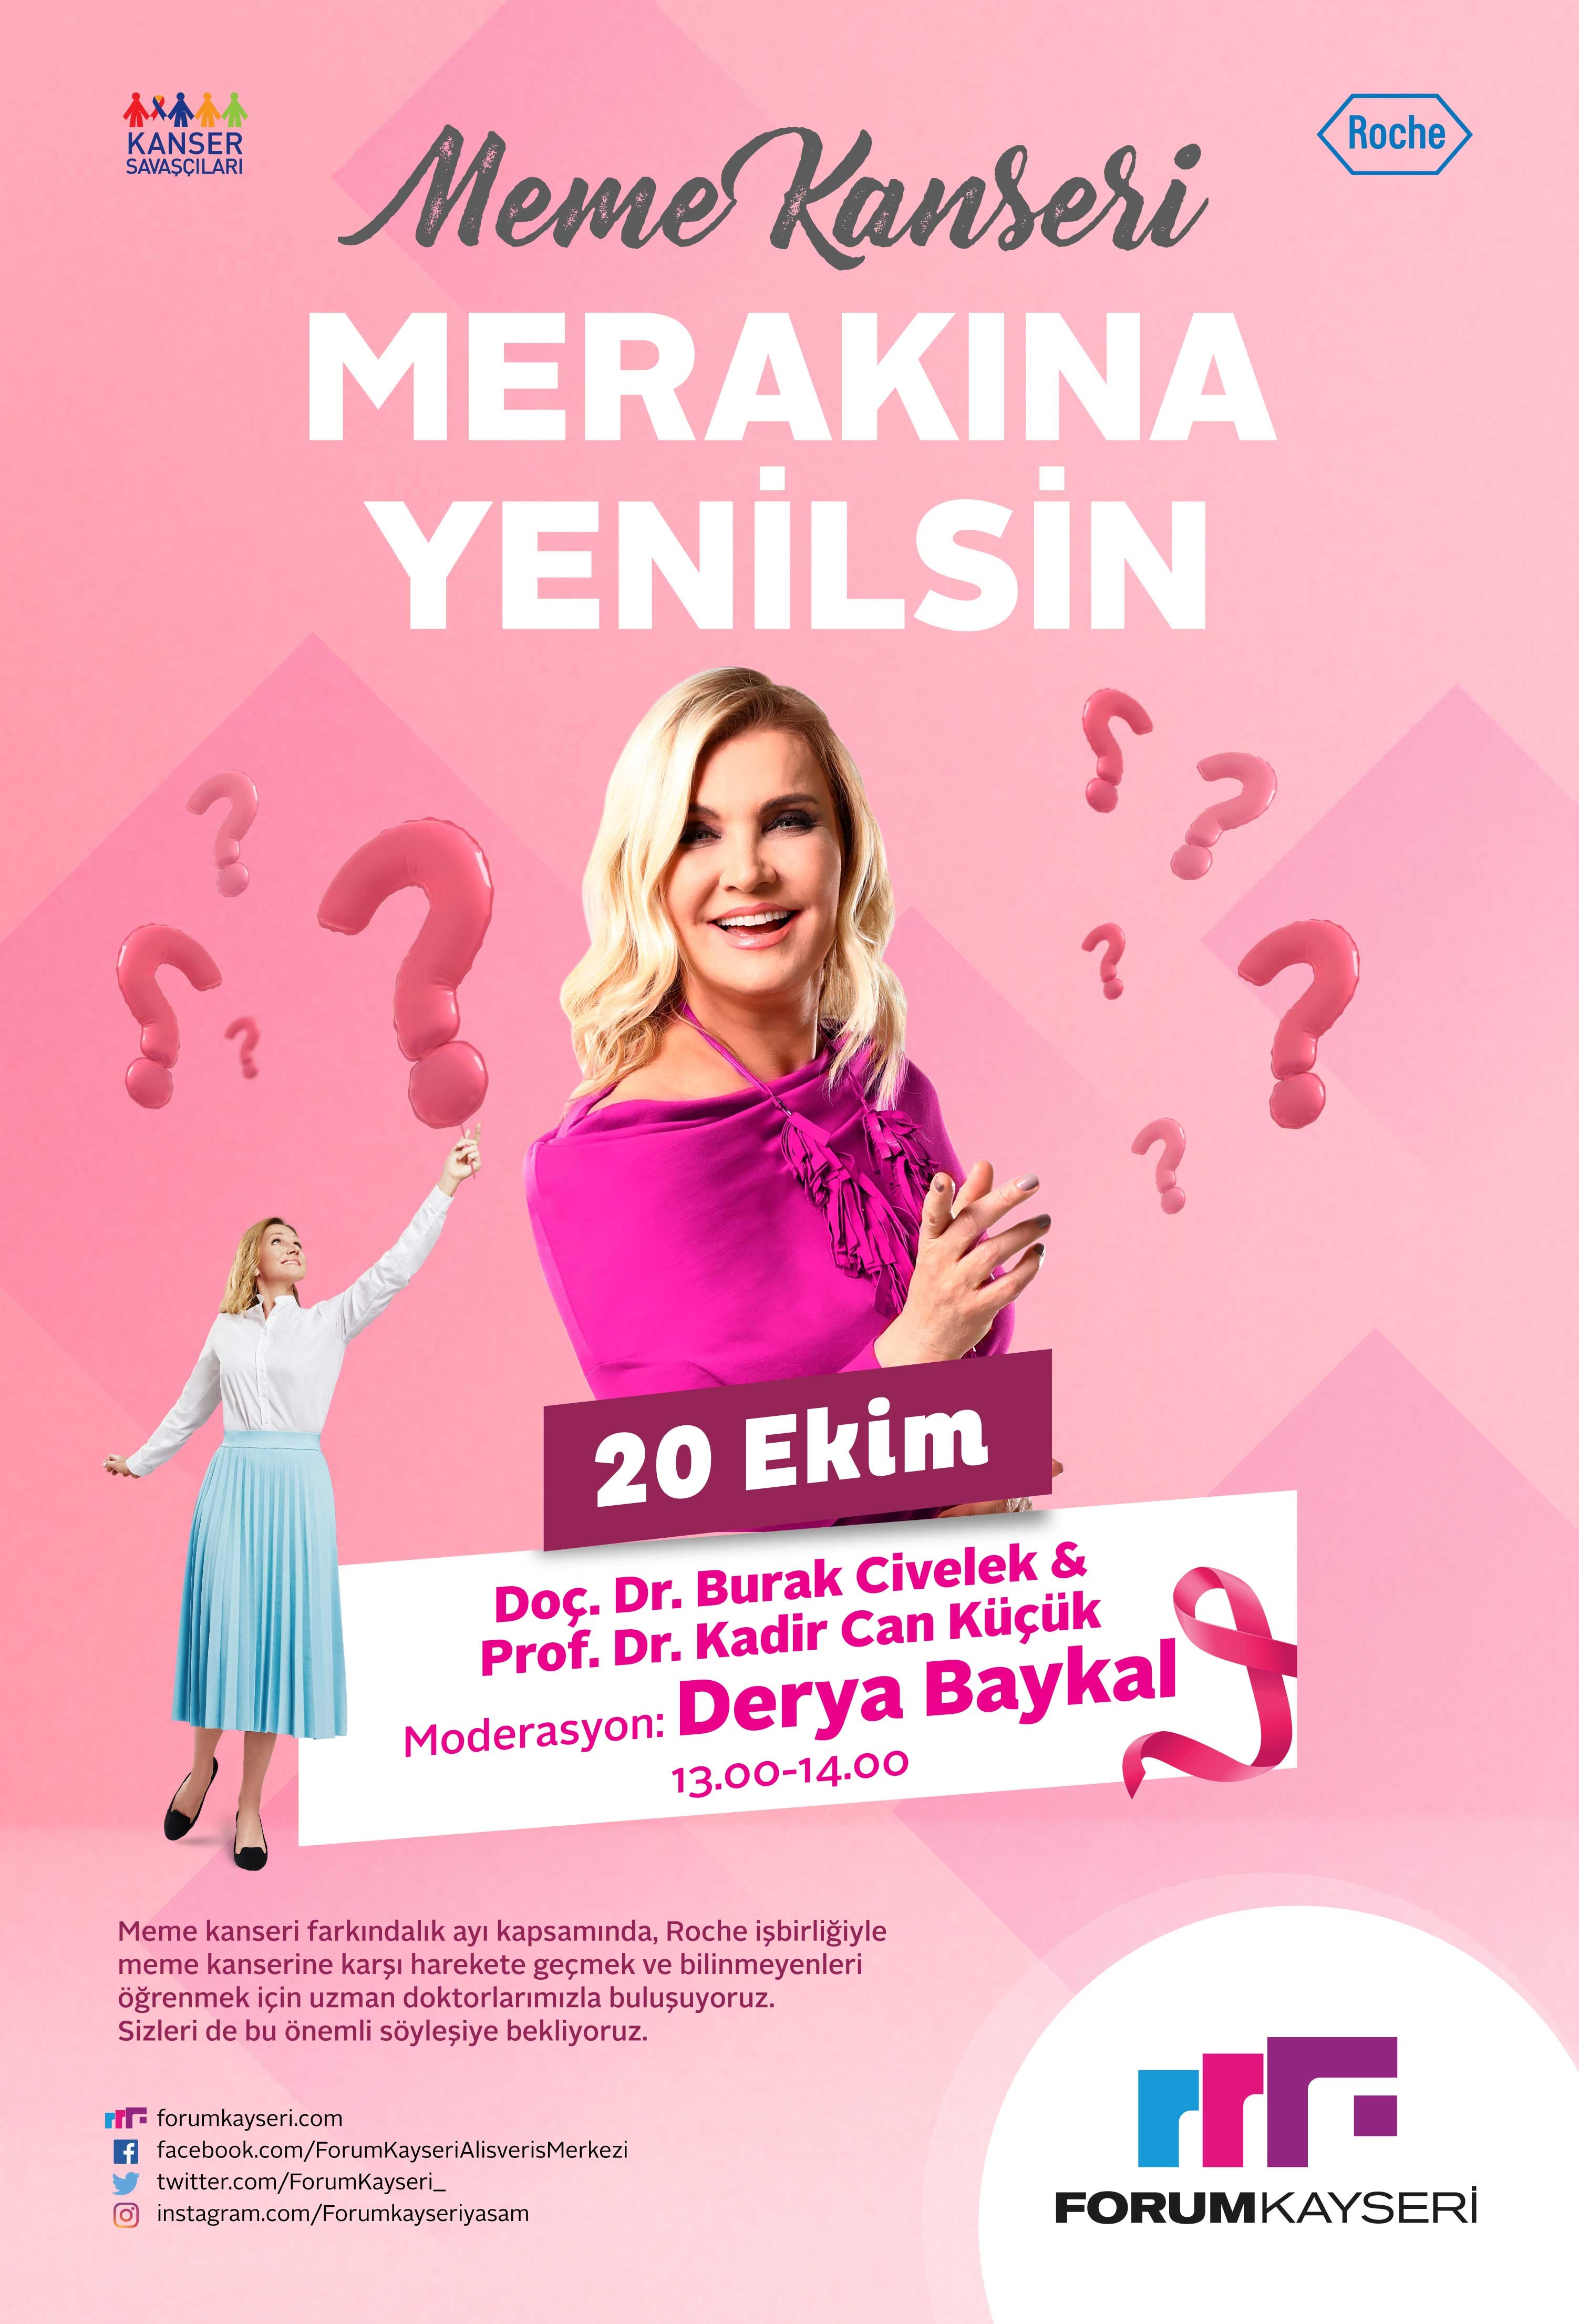 Meme Kanseri ‘Merakına Yenilsin’ Halk Buluşmaları Forum Kayseri’de